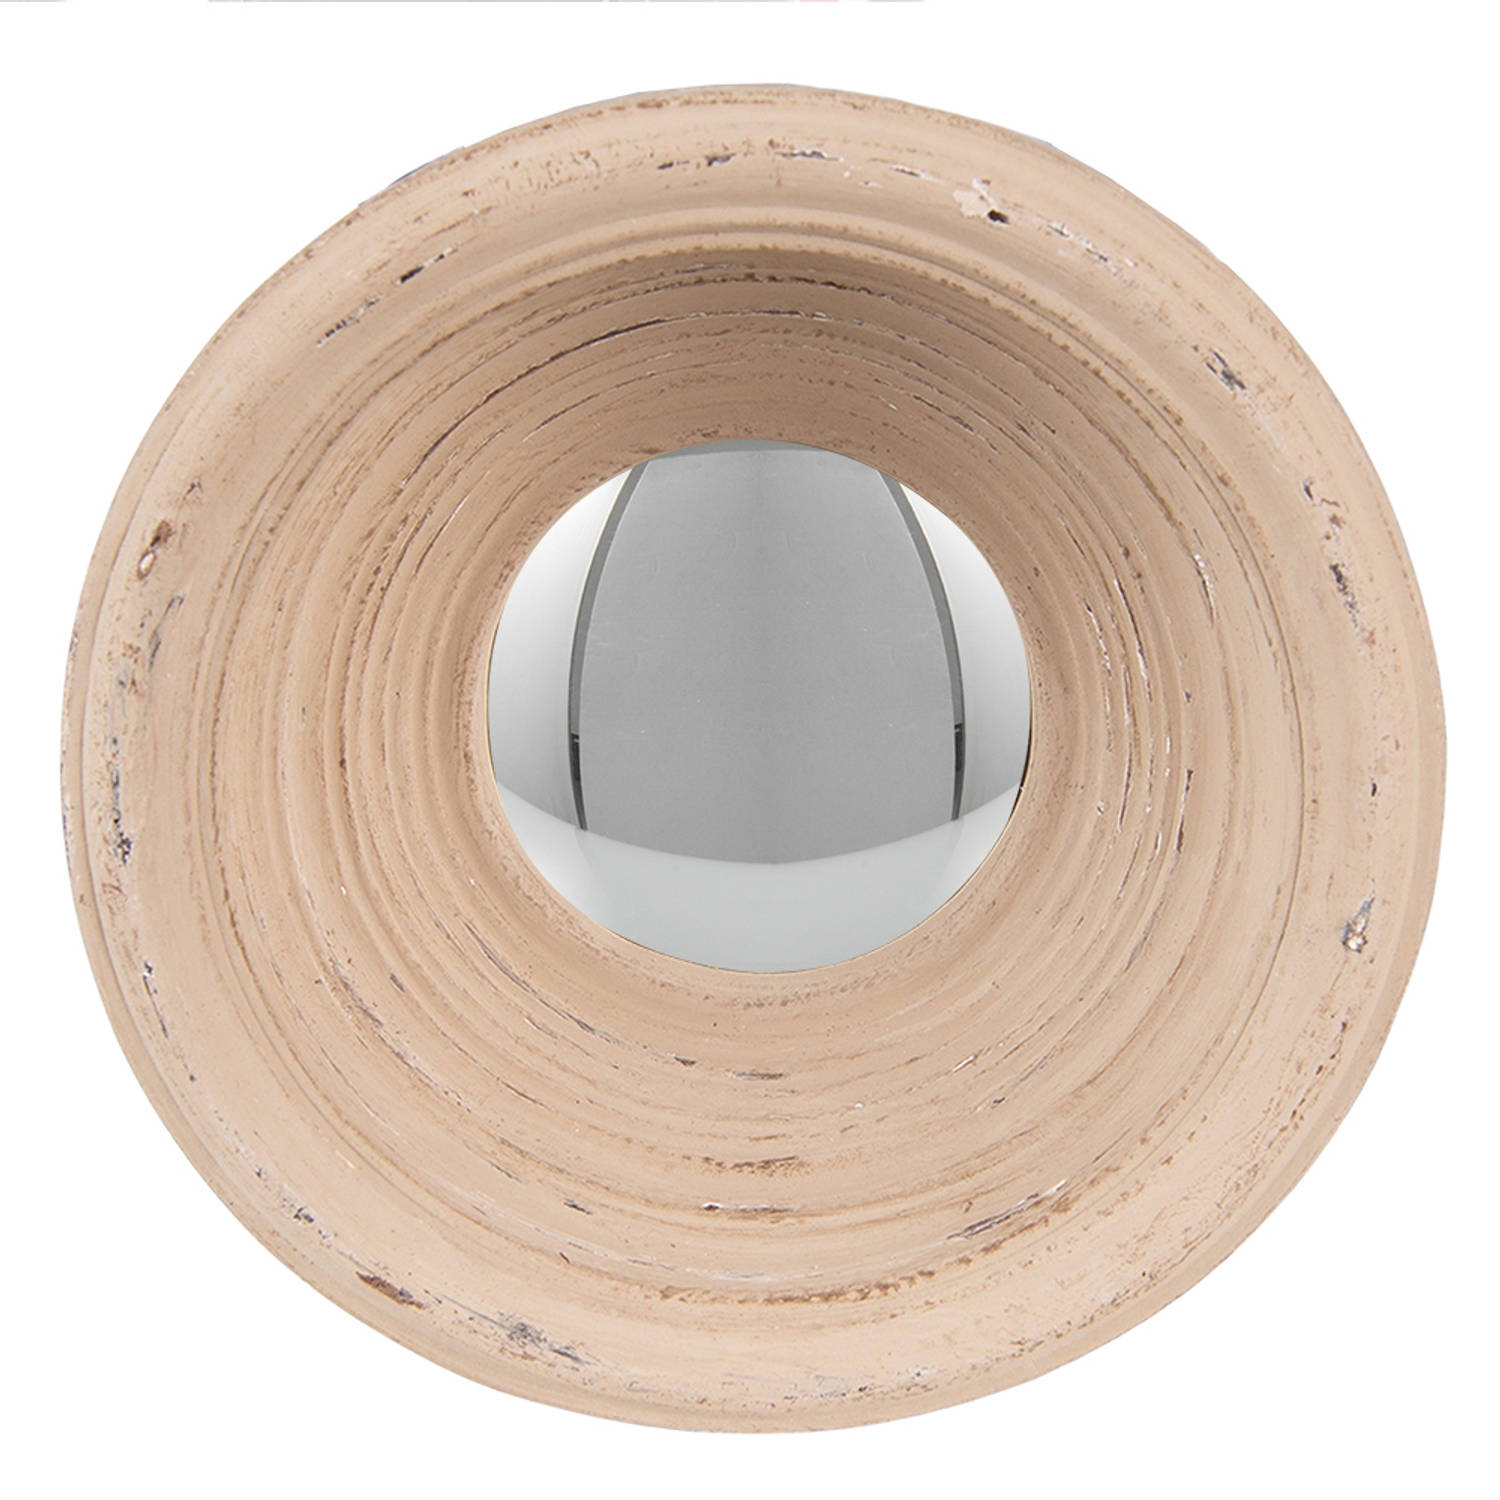 HAES DECO - Bolle ronde Spiegel - Kleur Beige - Formaat Ø 19x7 cm - Materiaal Polyurethaan ( PU) - Wandspiegel, Spiegel rond, Convex Glas